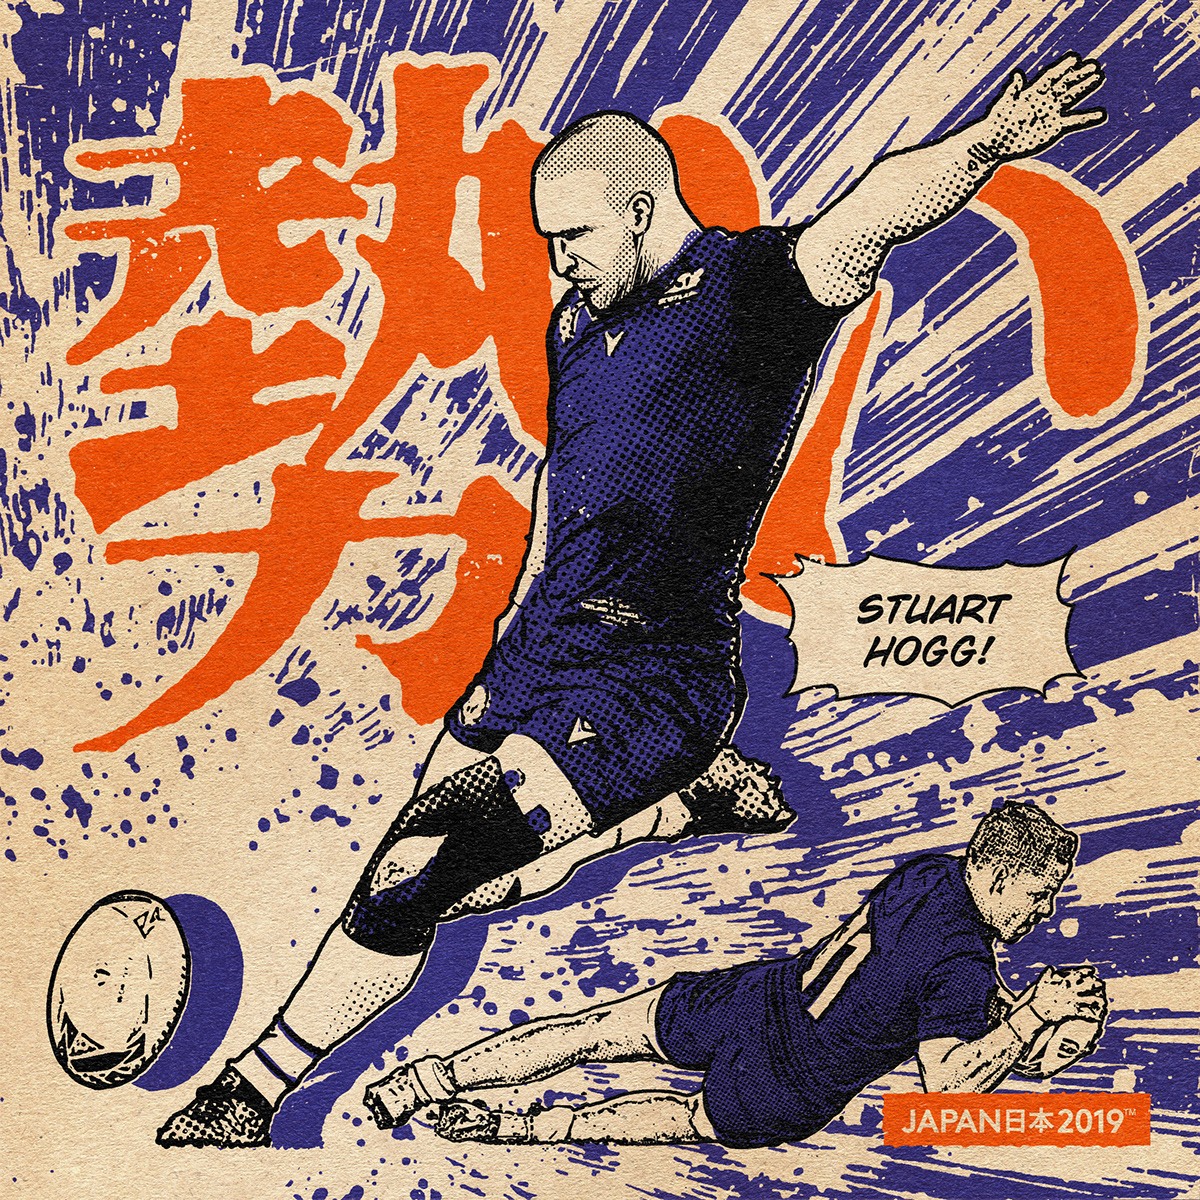 paiheme paiheme studio RWC Rugby manga vintage comics Japan 2019 japanese art Retro